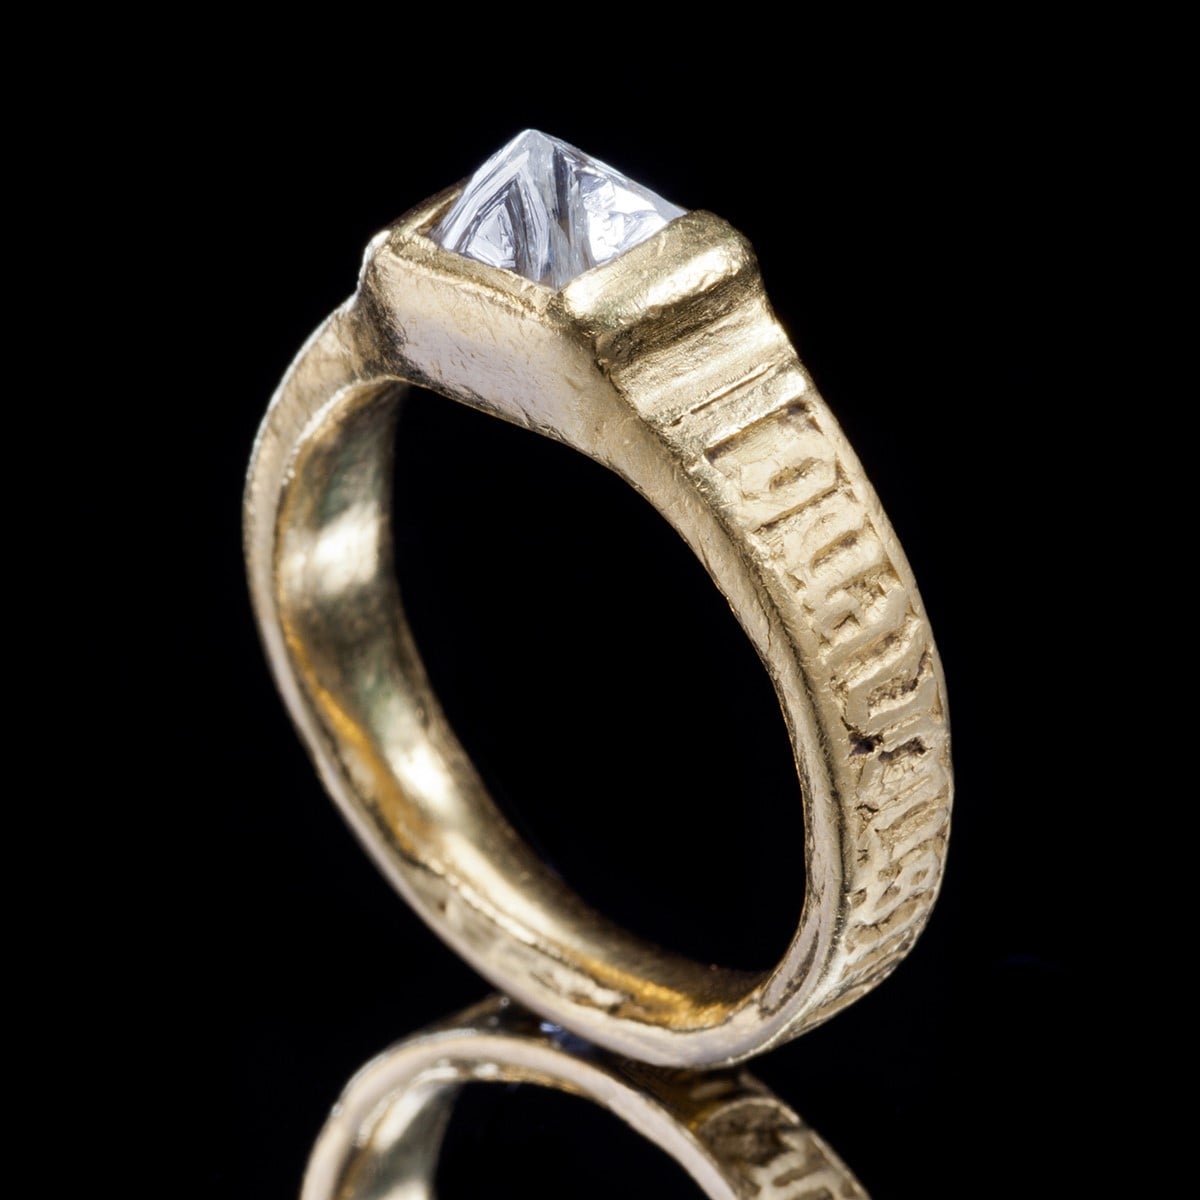 15世紀のデザインを再現した「アンカット・ダイヤモンド」リング。フープには『一緒にいない時は私のことを想ってください』とノルマンフランス語で彫ってある。「ルネッサンス」リング。K22ゴールド・ダイヤモンド。550,000円 税込